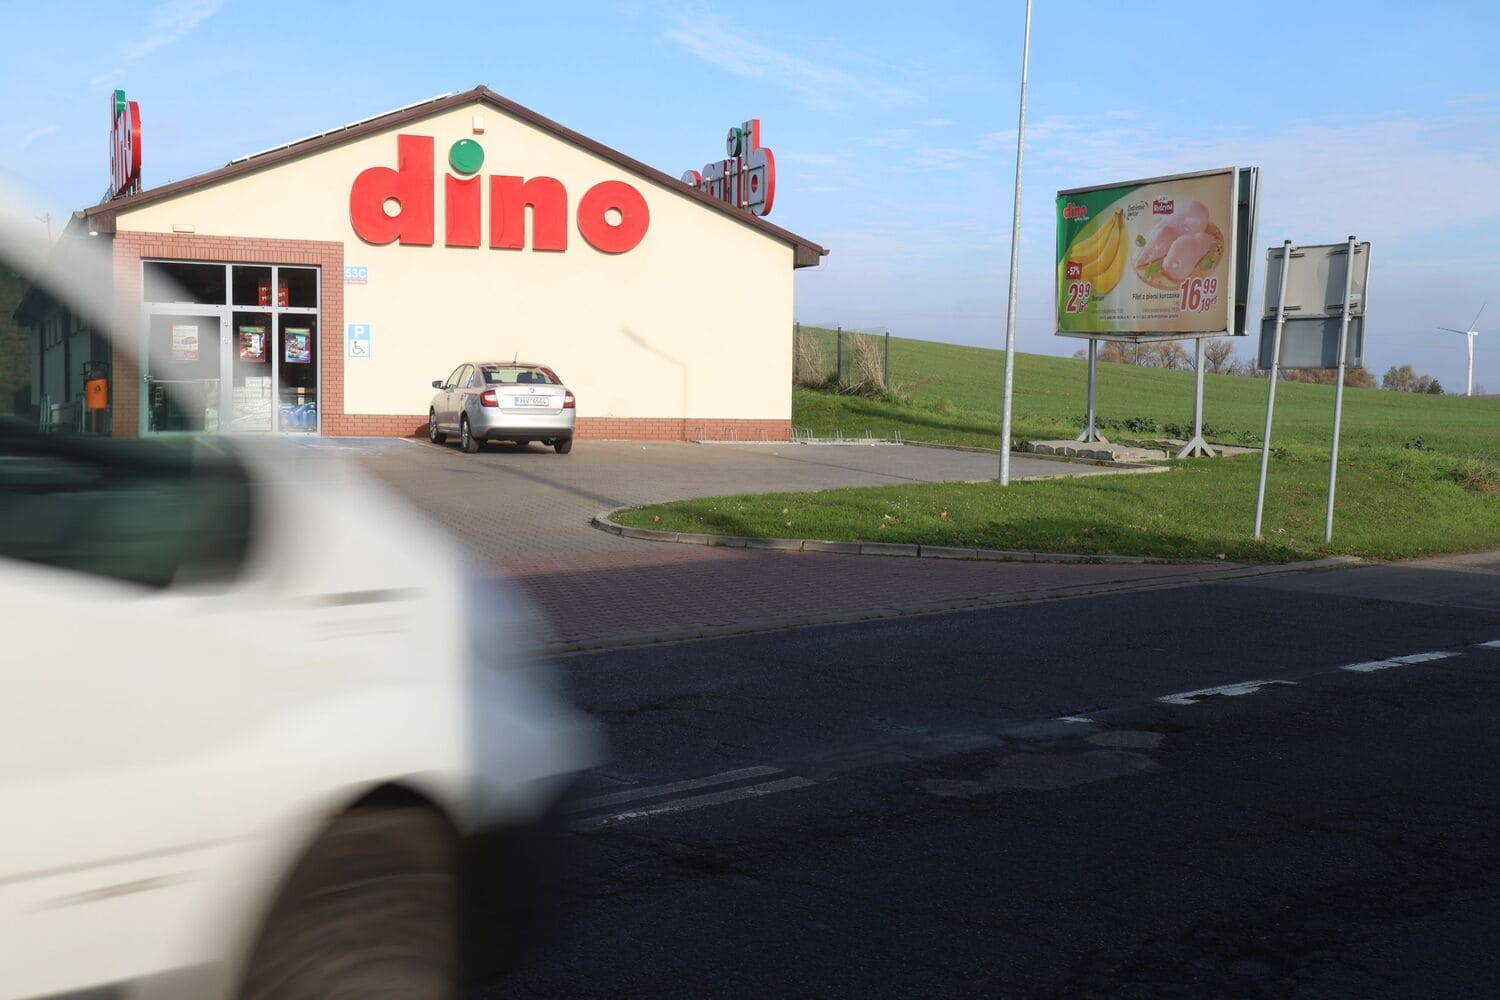 Магазин Dino, где тоже были зафиксированы случаи вандализма